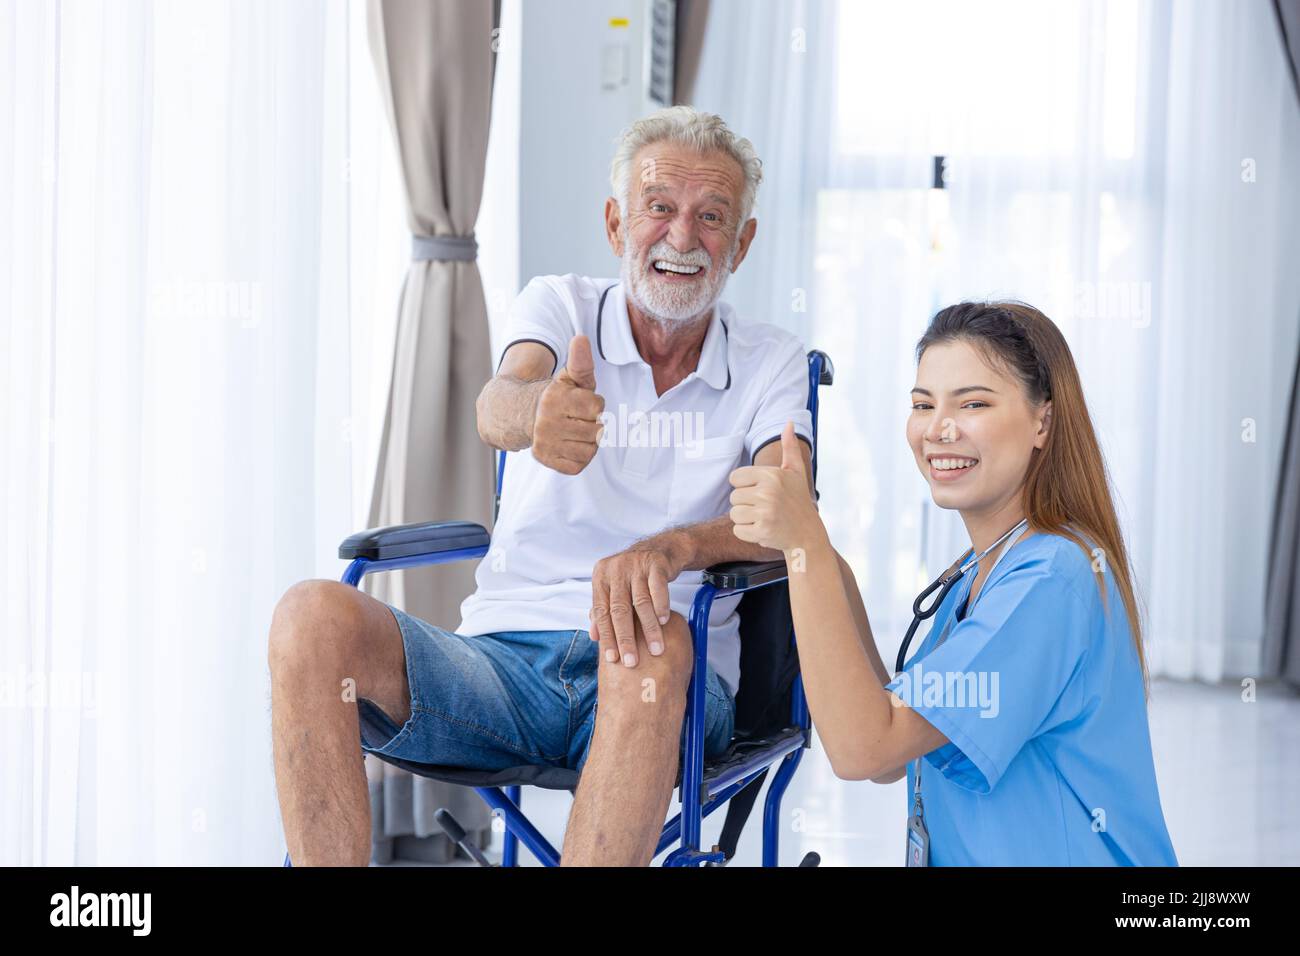 Portrait infirmier personnel médical Service de soutien senior personne âgée Homme en santé sur la roue chaise pouces vers le haut sourire heureux. Banque D'Images